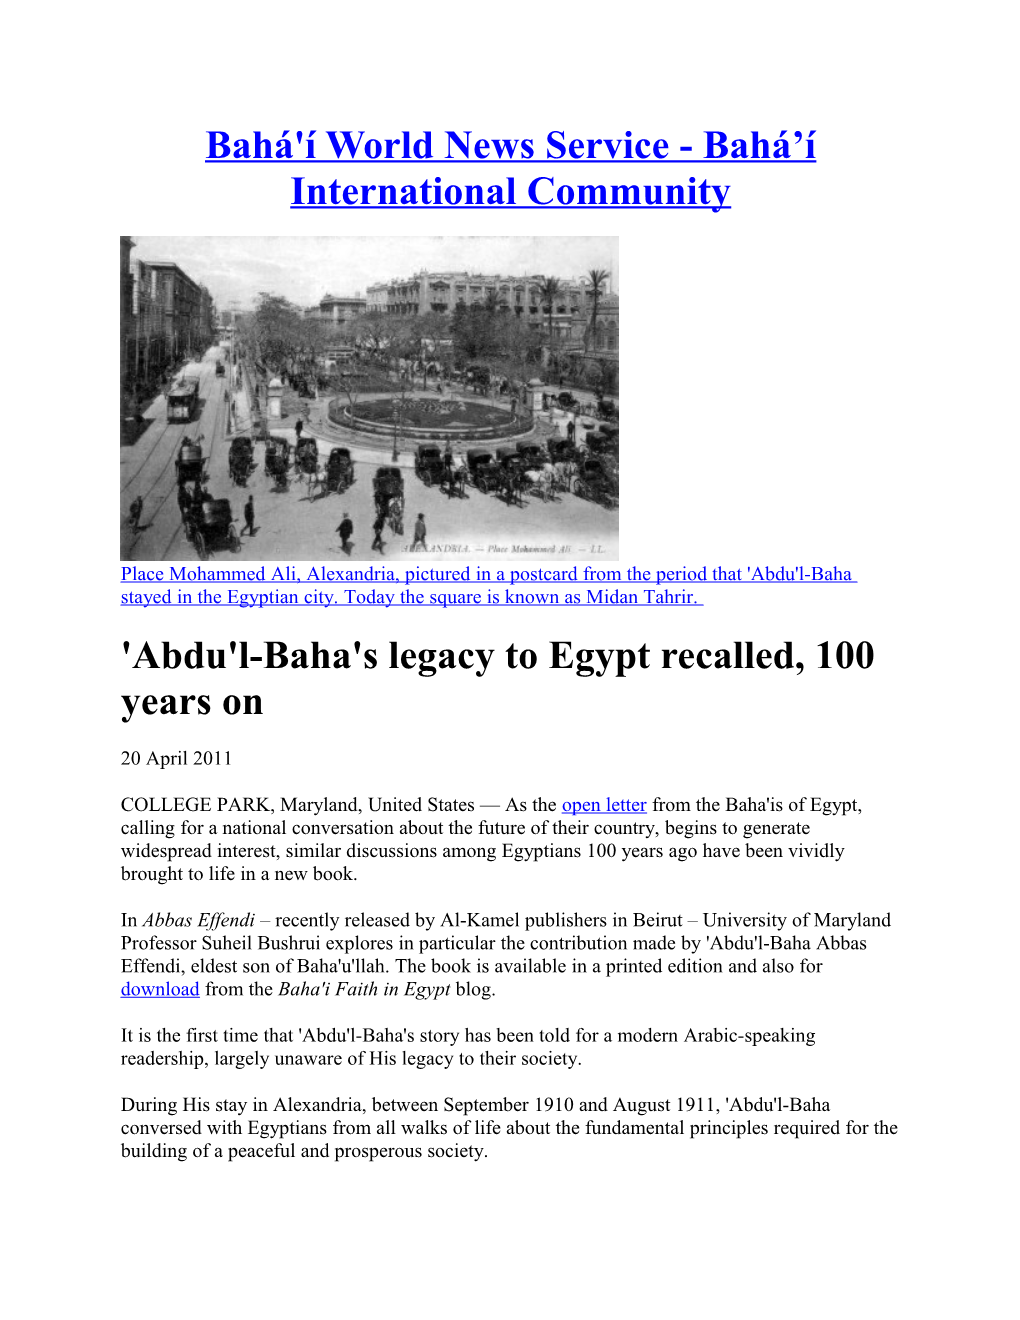 Bahá'í World News Service - Bahá Í International Community